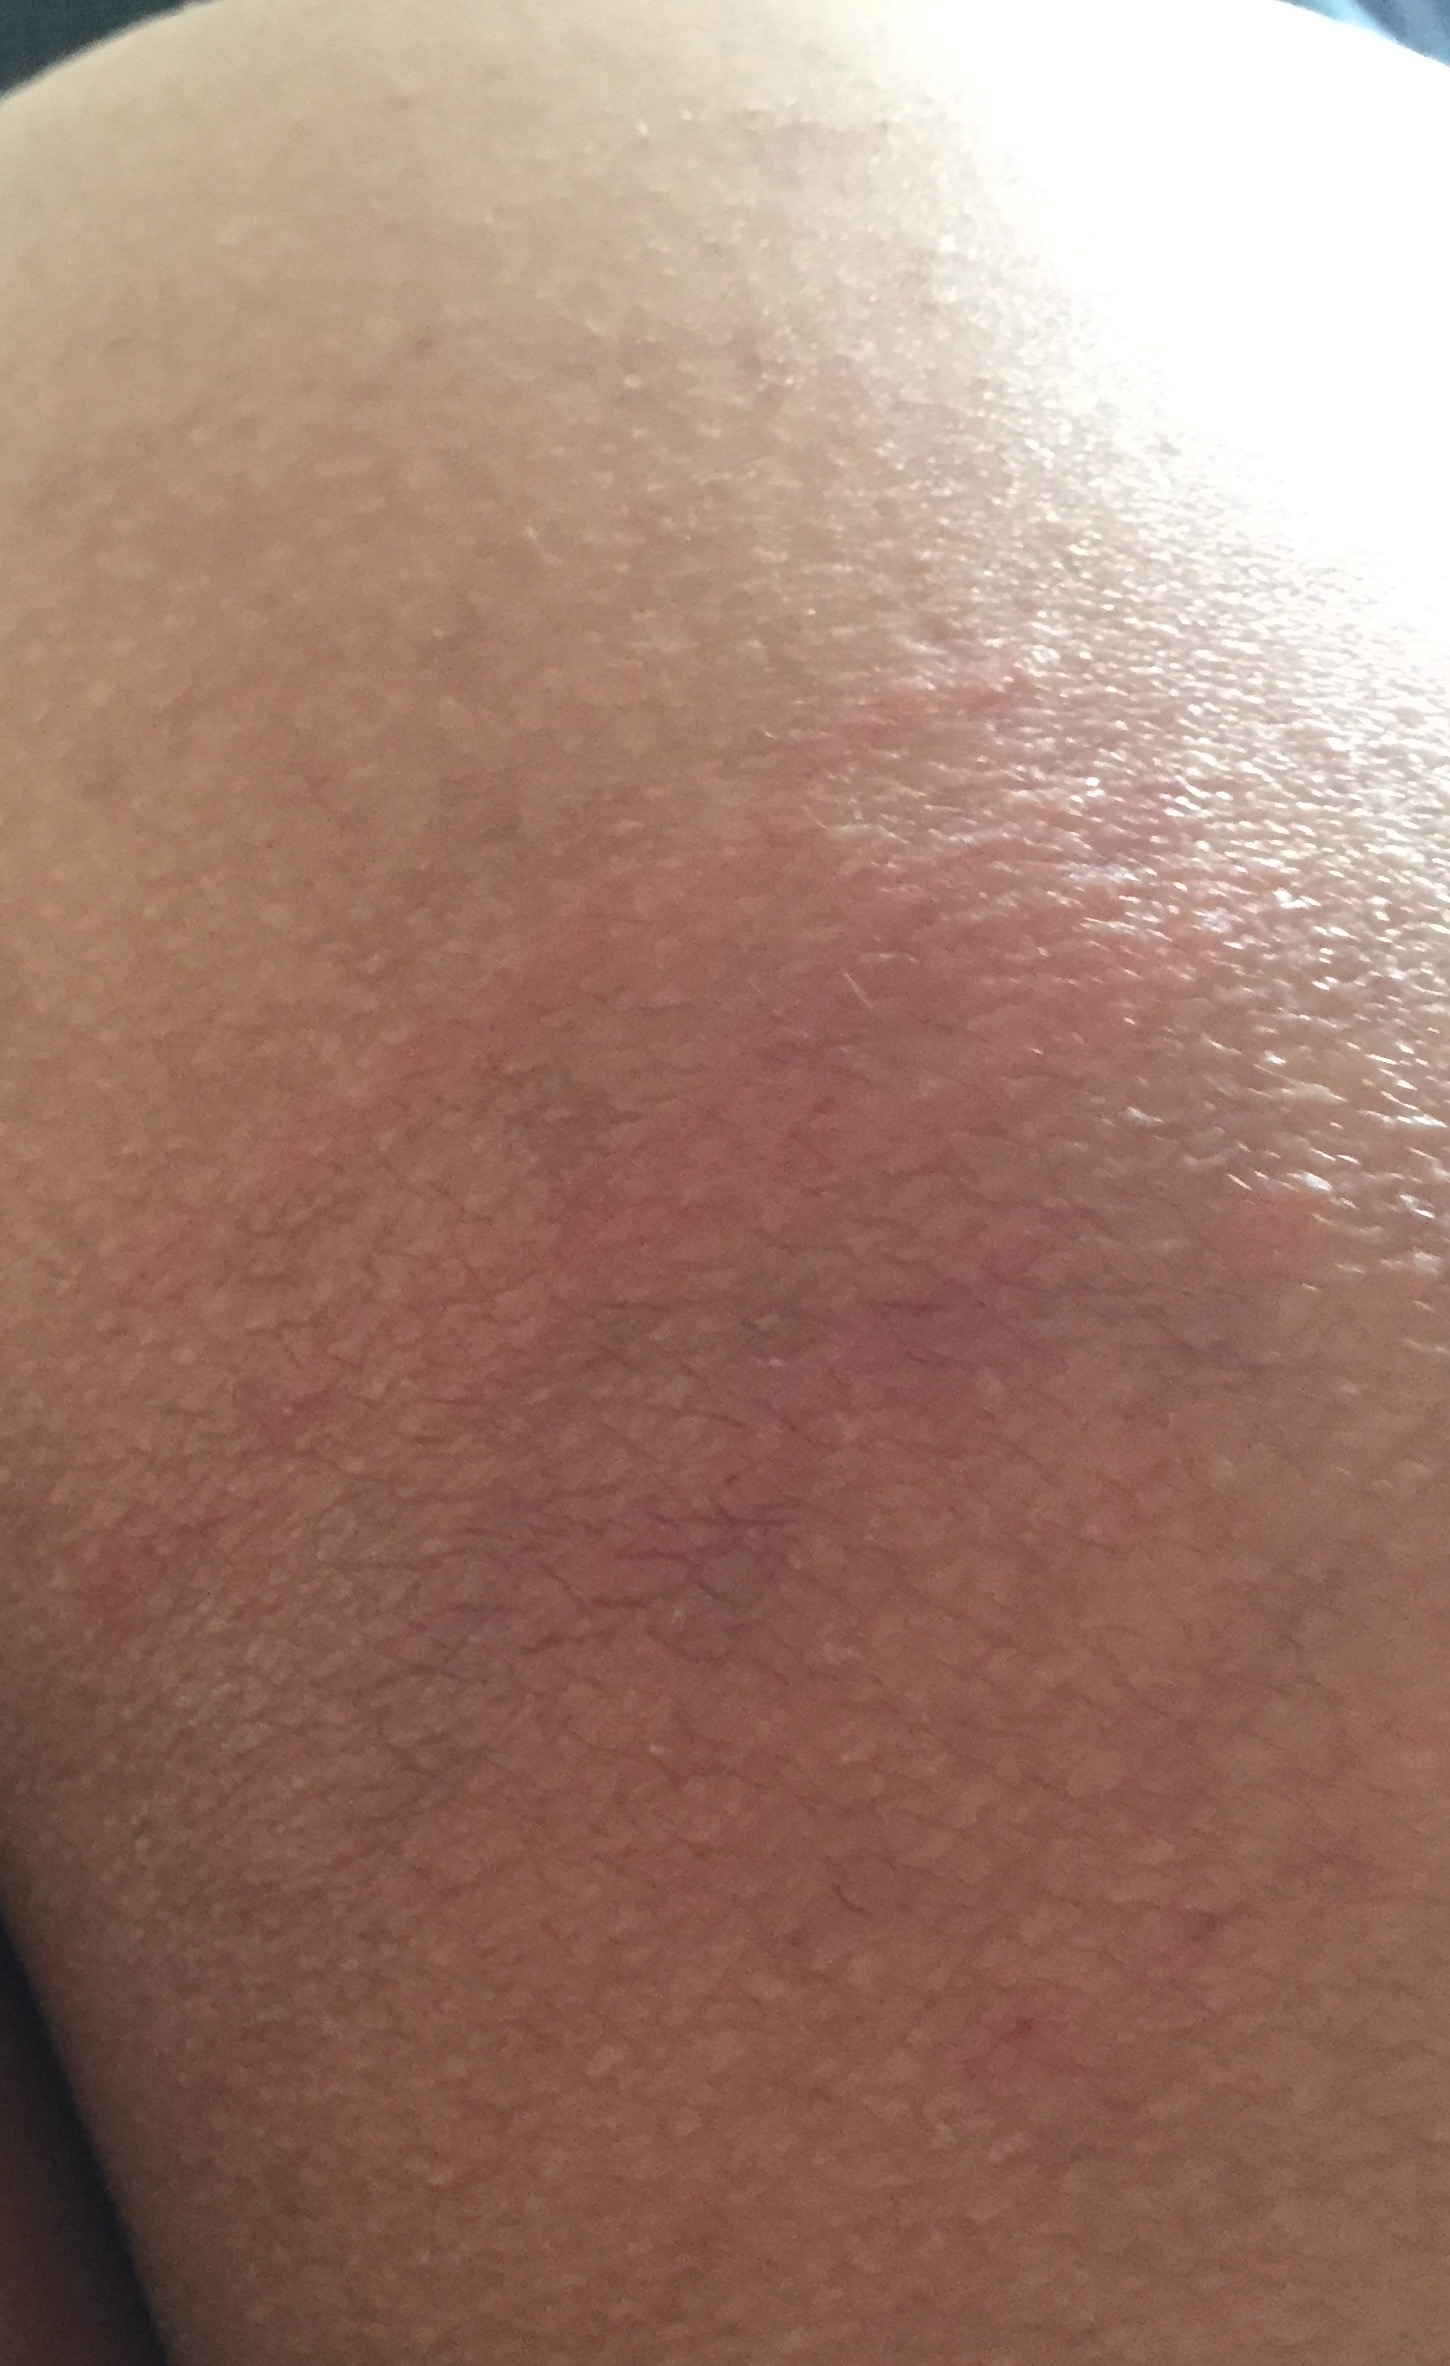 臀部皮肤有几条红斑凸起有瘙痒疼痛感周围皮肤没有疼痛感持续了一